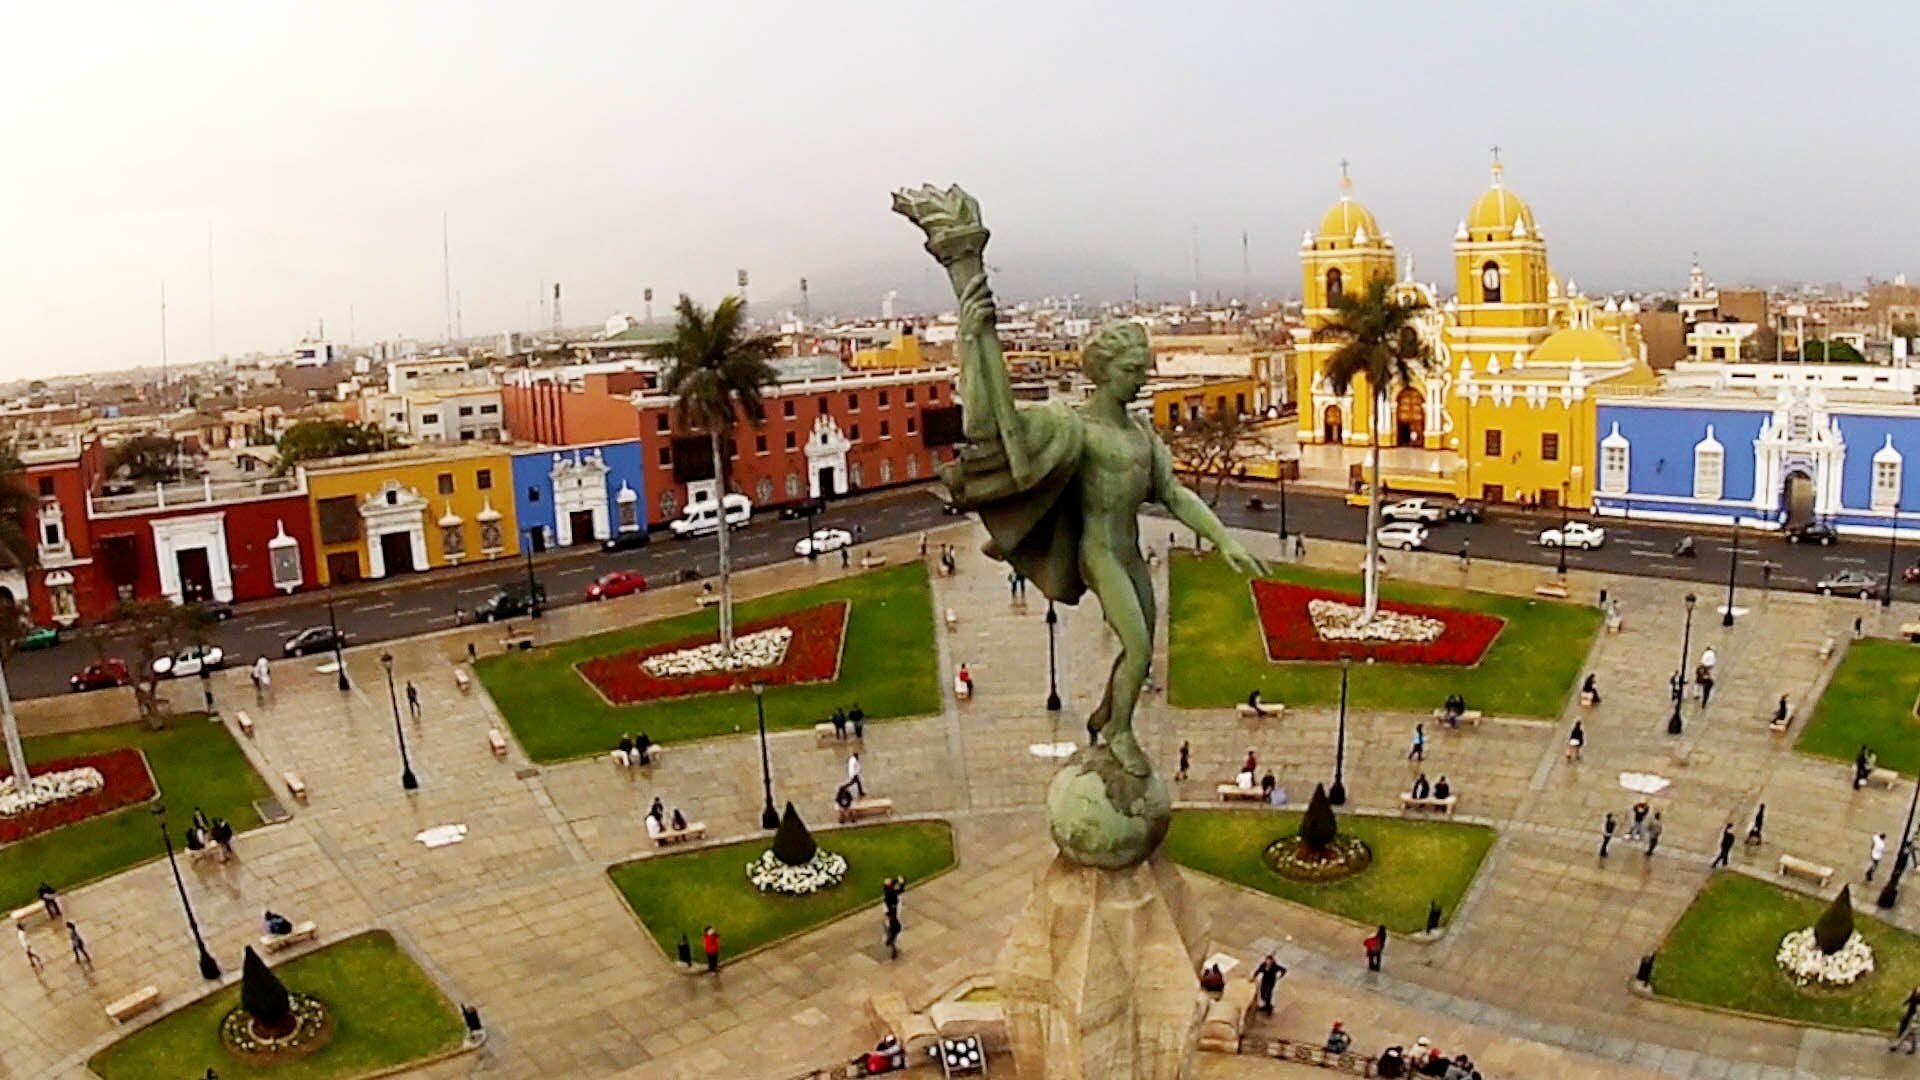 Трухильо Перу. Плаза де Армас парк. Лима столица Перу. Исторический центр Лимы. Почему перу назвали перу